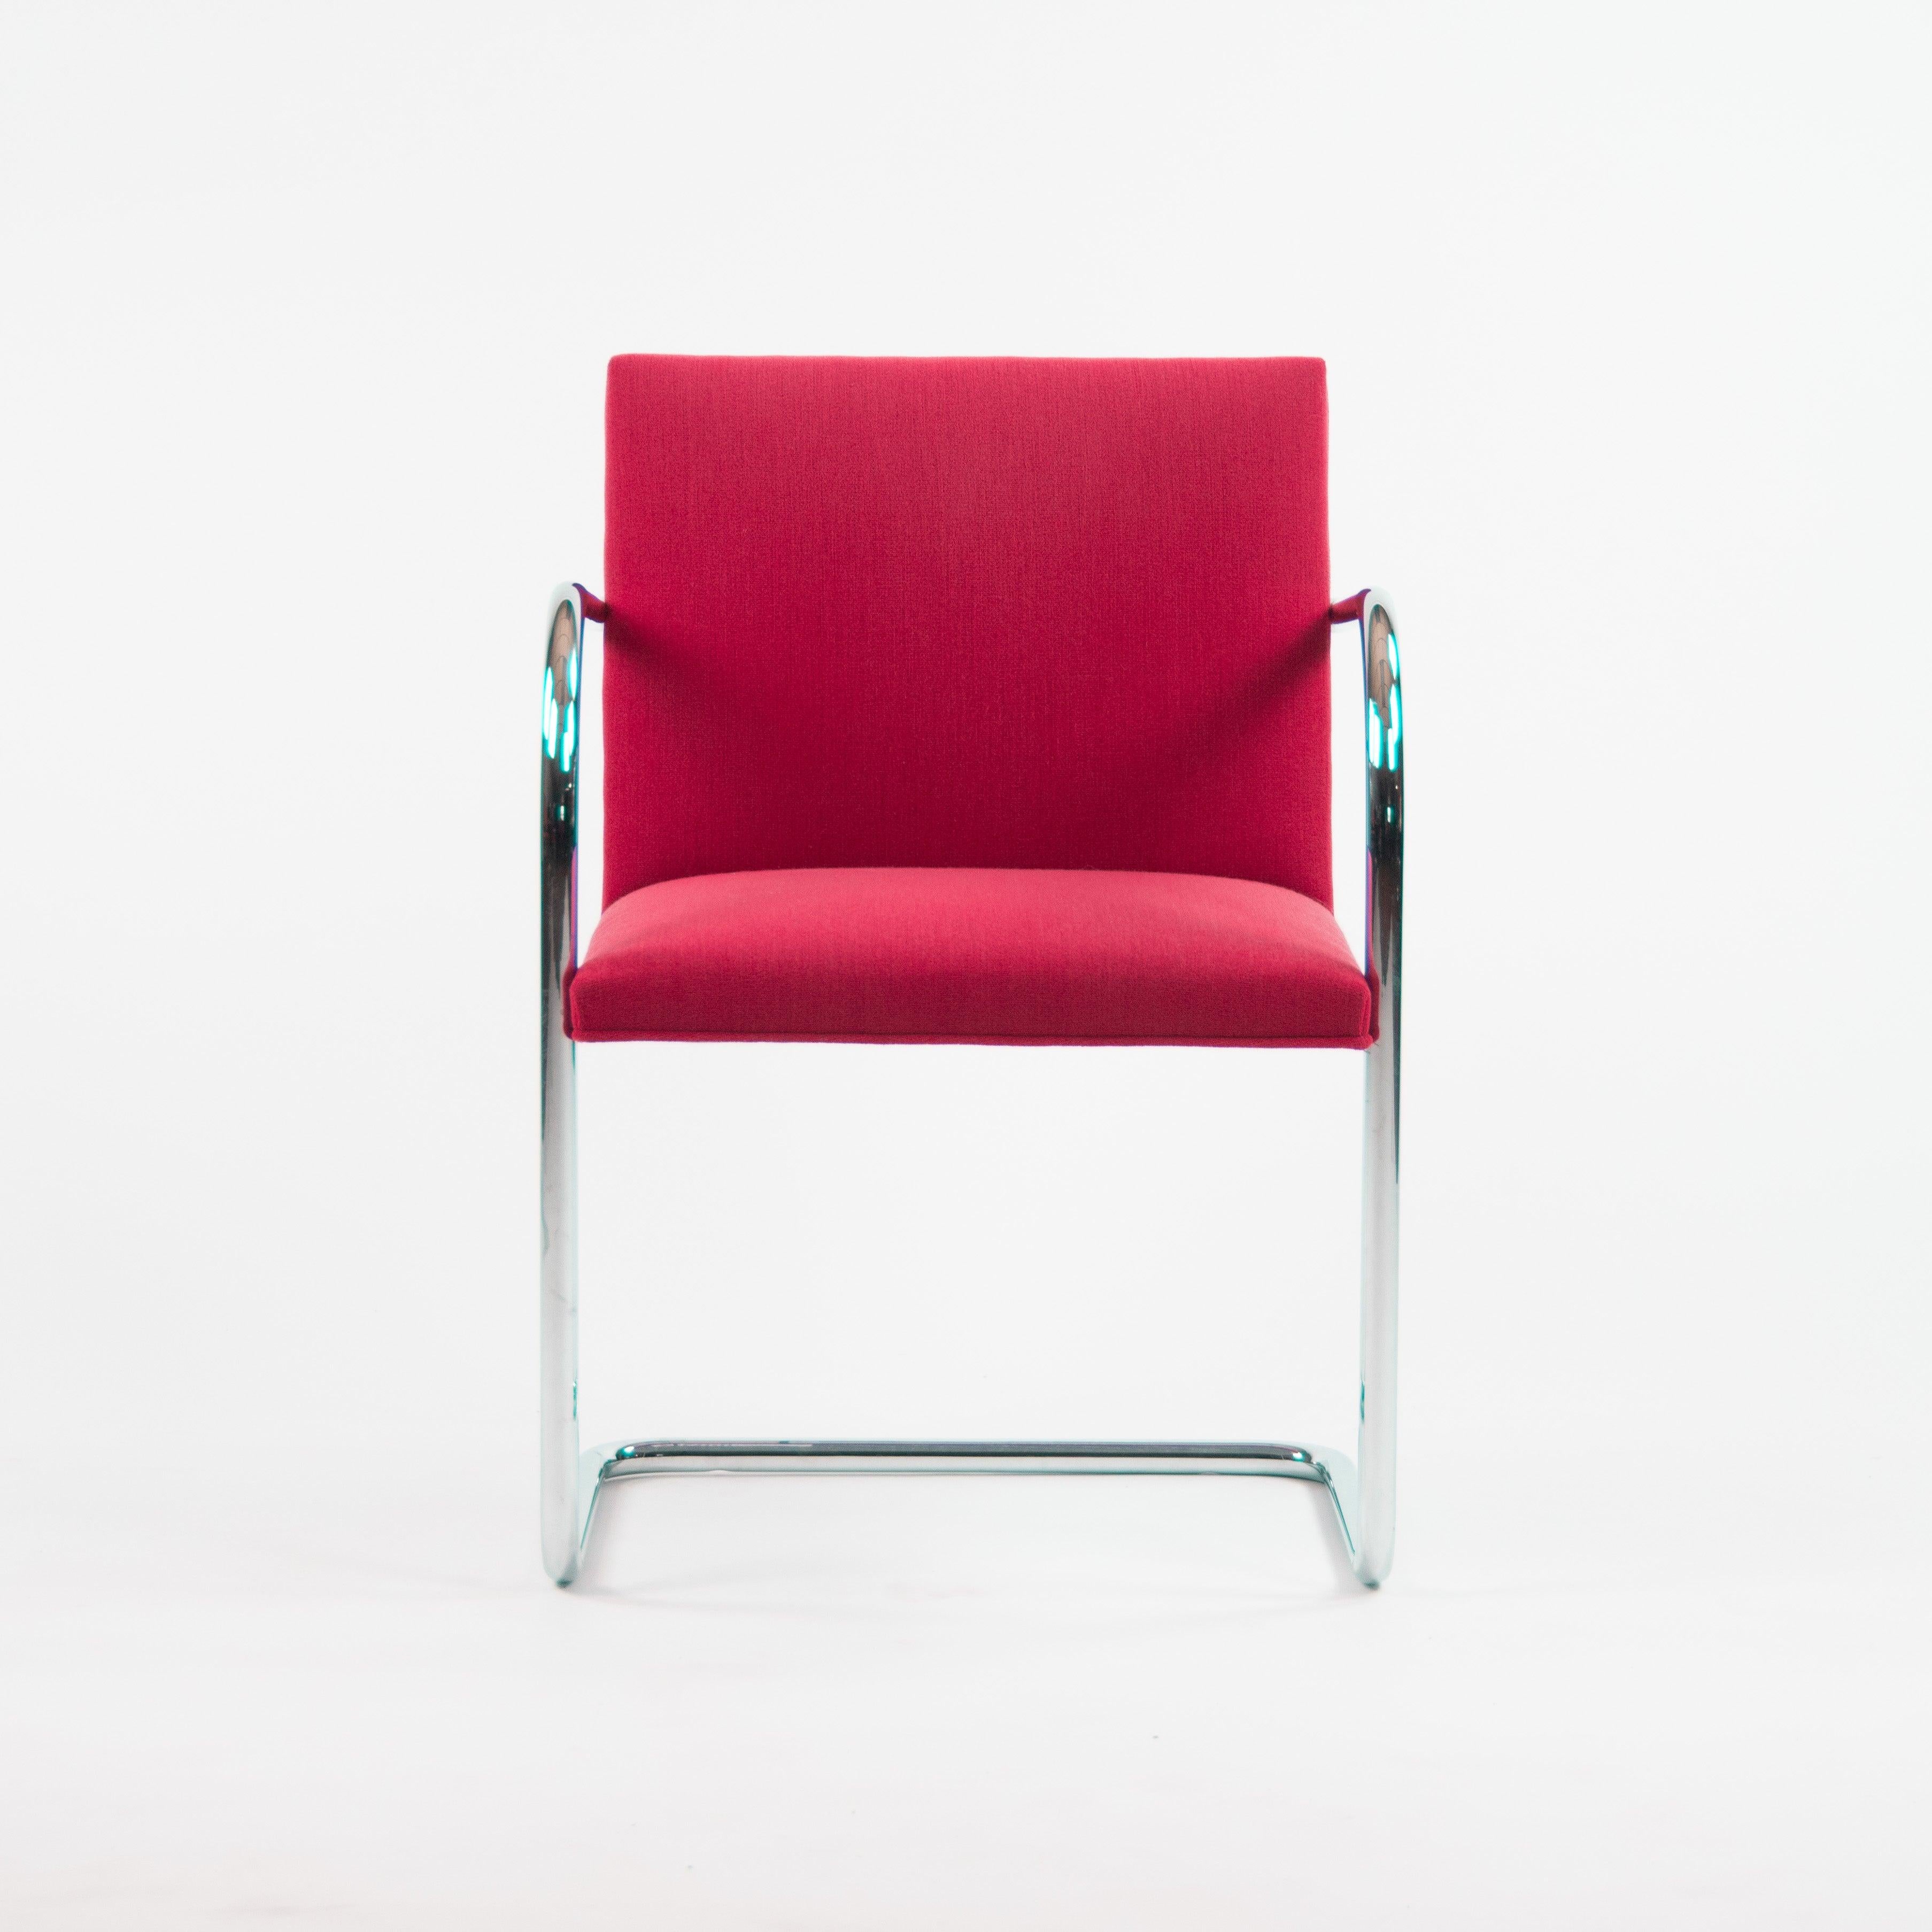 Zum Verkauf steht ein authentischer (einzeln verkaufter) Label Mies Van Der Rohe Brno Stuhl in rotem Stoff mit einem schönen glänzenden verchromten Stahlrohrgestell.


Die Stühle wurden Mitte der 2000er bis Anfang der 2010er Jahre hergestellt und